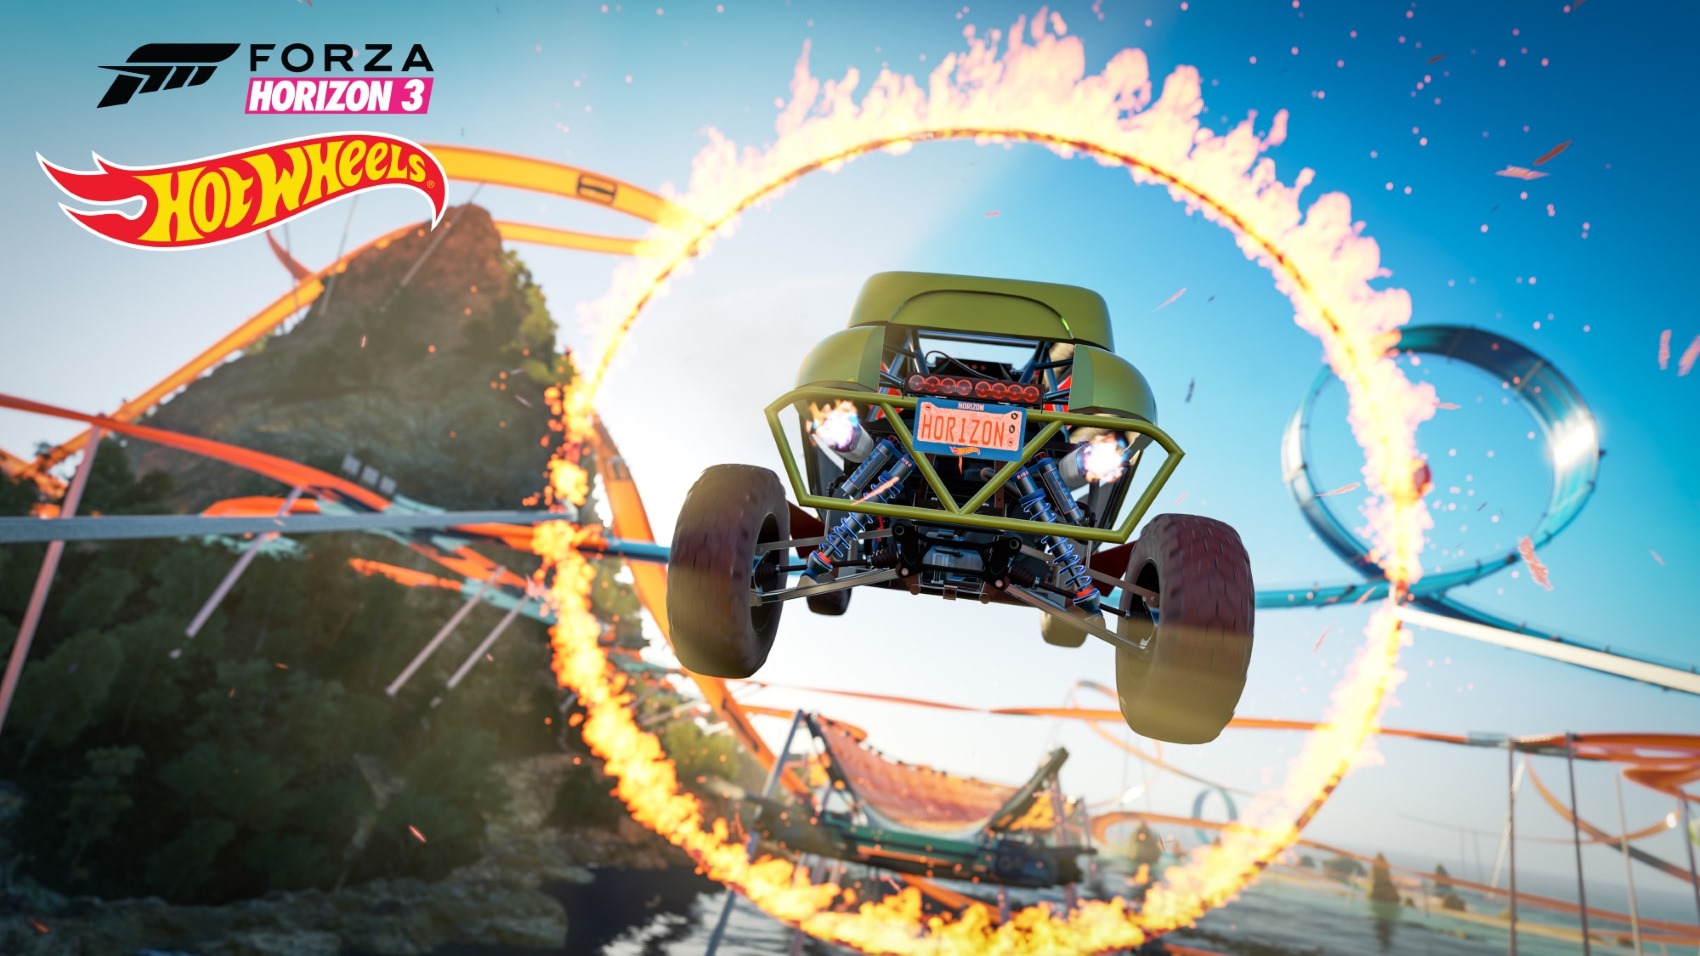 Forza Horizon 3 - Hot Wheels